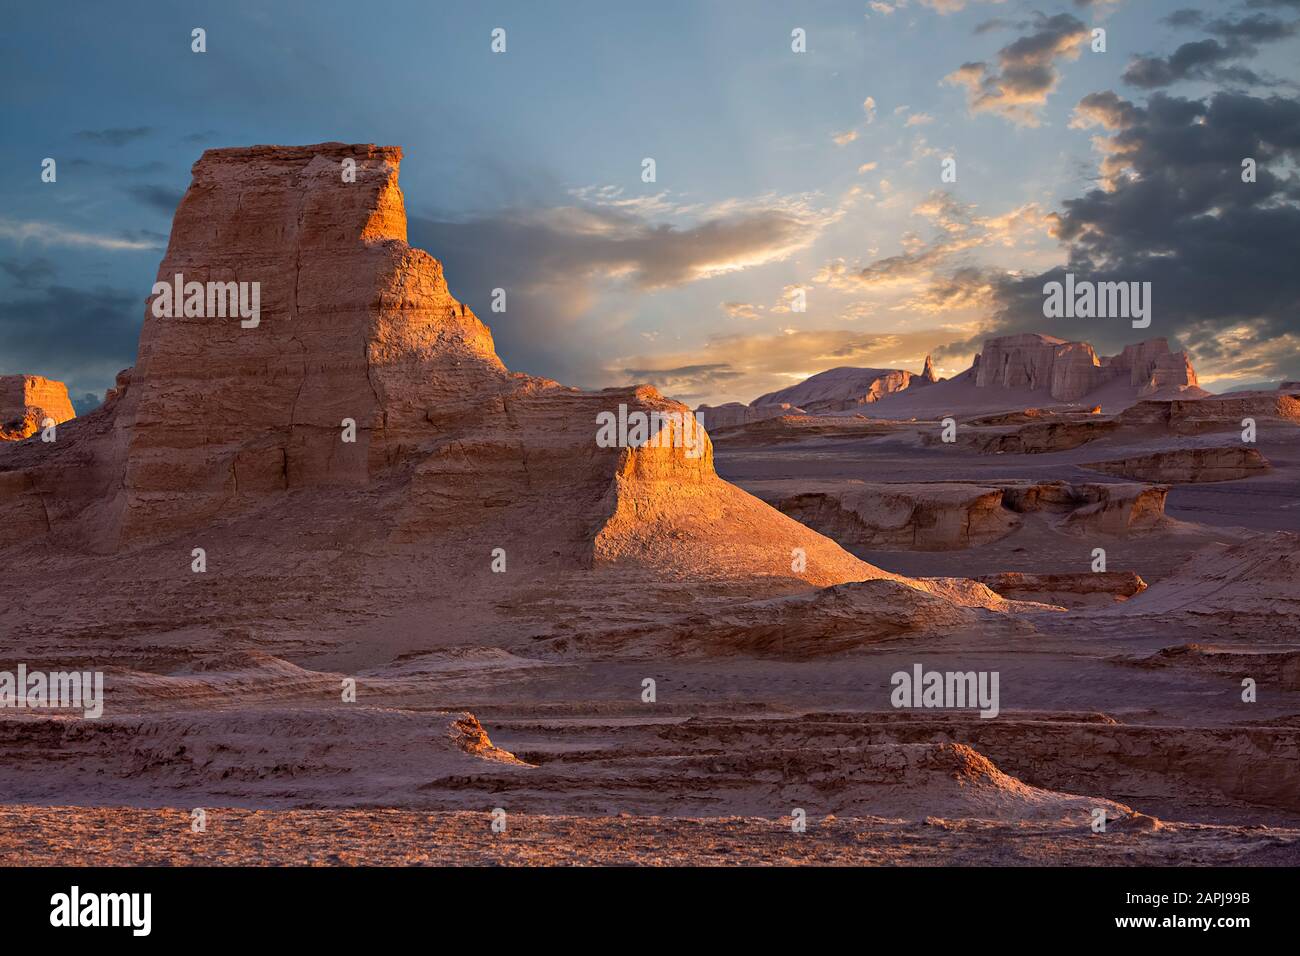 LUT deserto in Iran con formazioni note come Kaluts Foto Stock